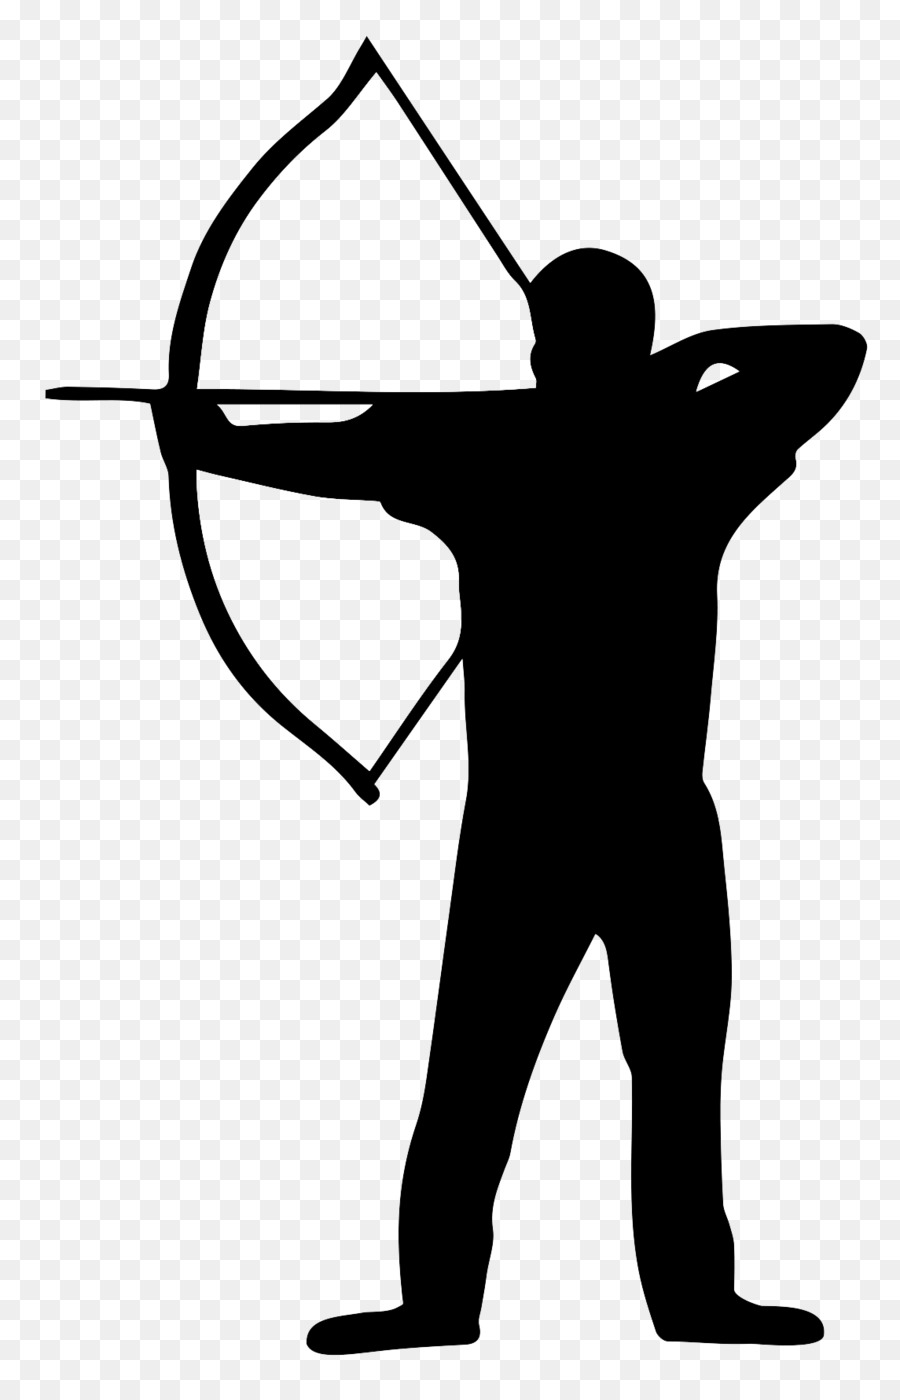 Archers de Broc�liande Archery Silhouette Bowyer Clip art - Silhouette png download - 1145*1770 - Free Transparent Archery png Download.